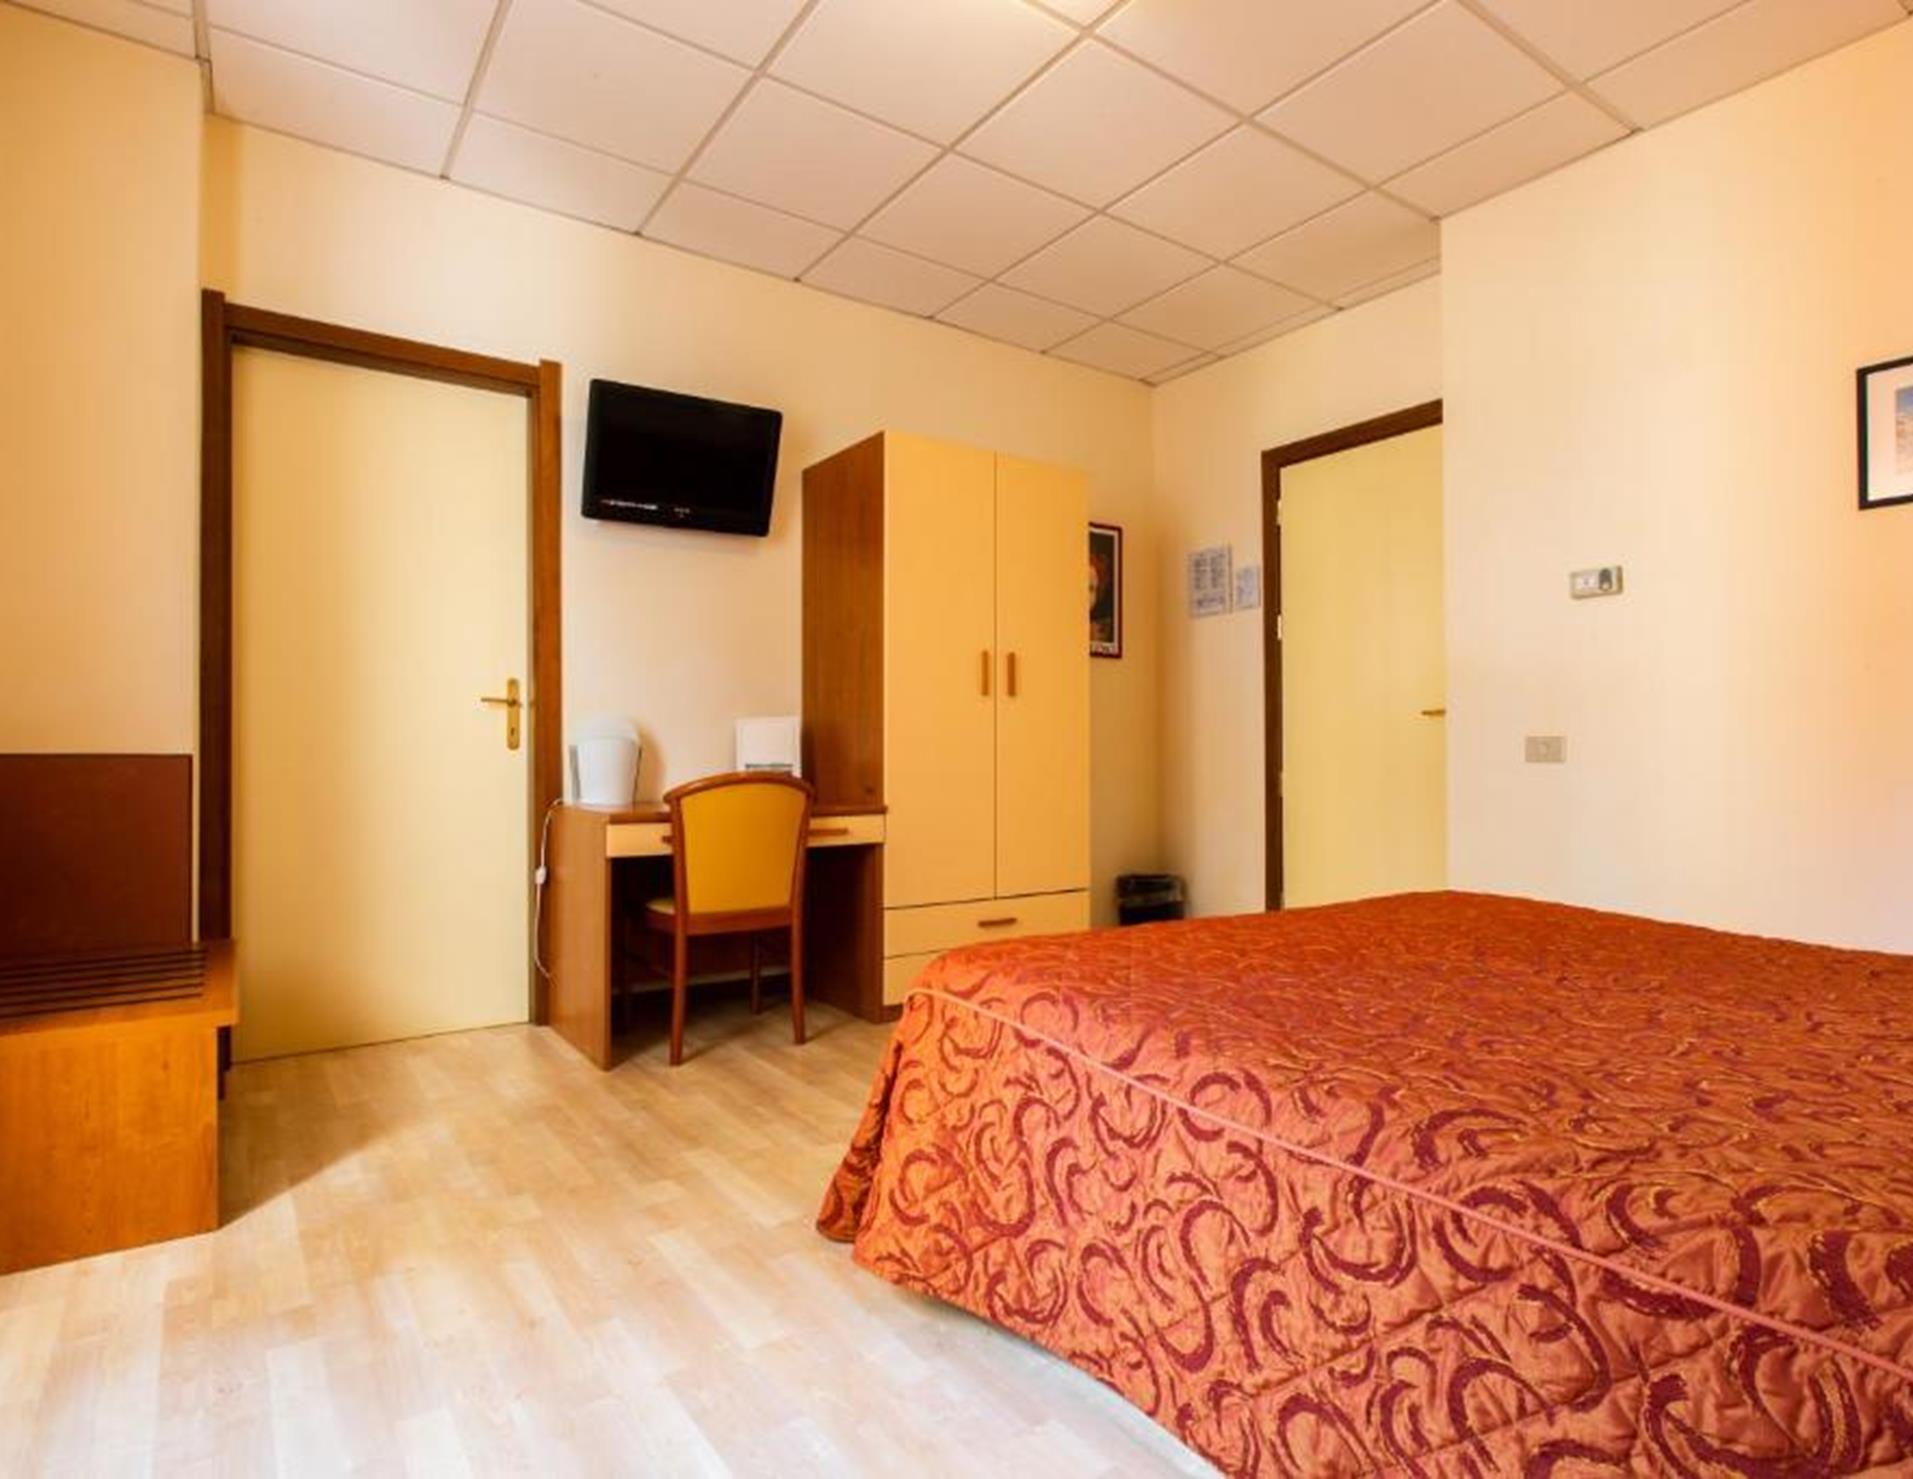 Hotel Il Chiostro - Room 3